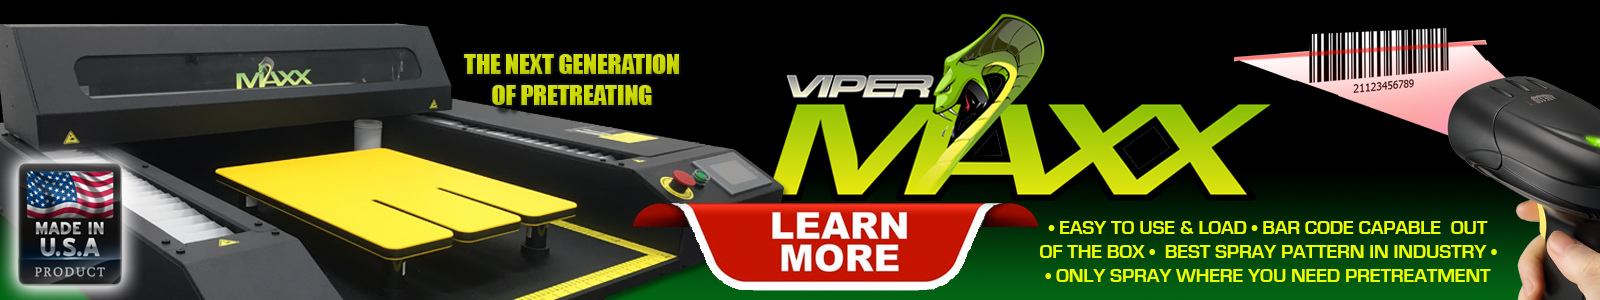 Viper MAXX Learn More